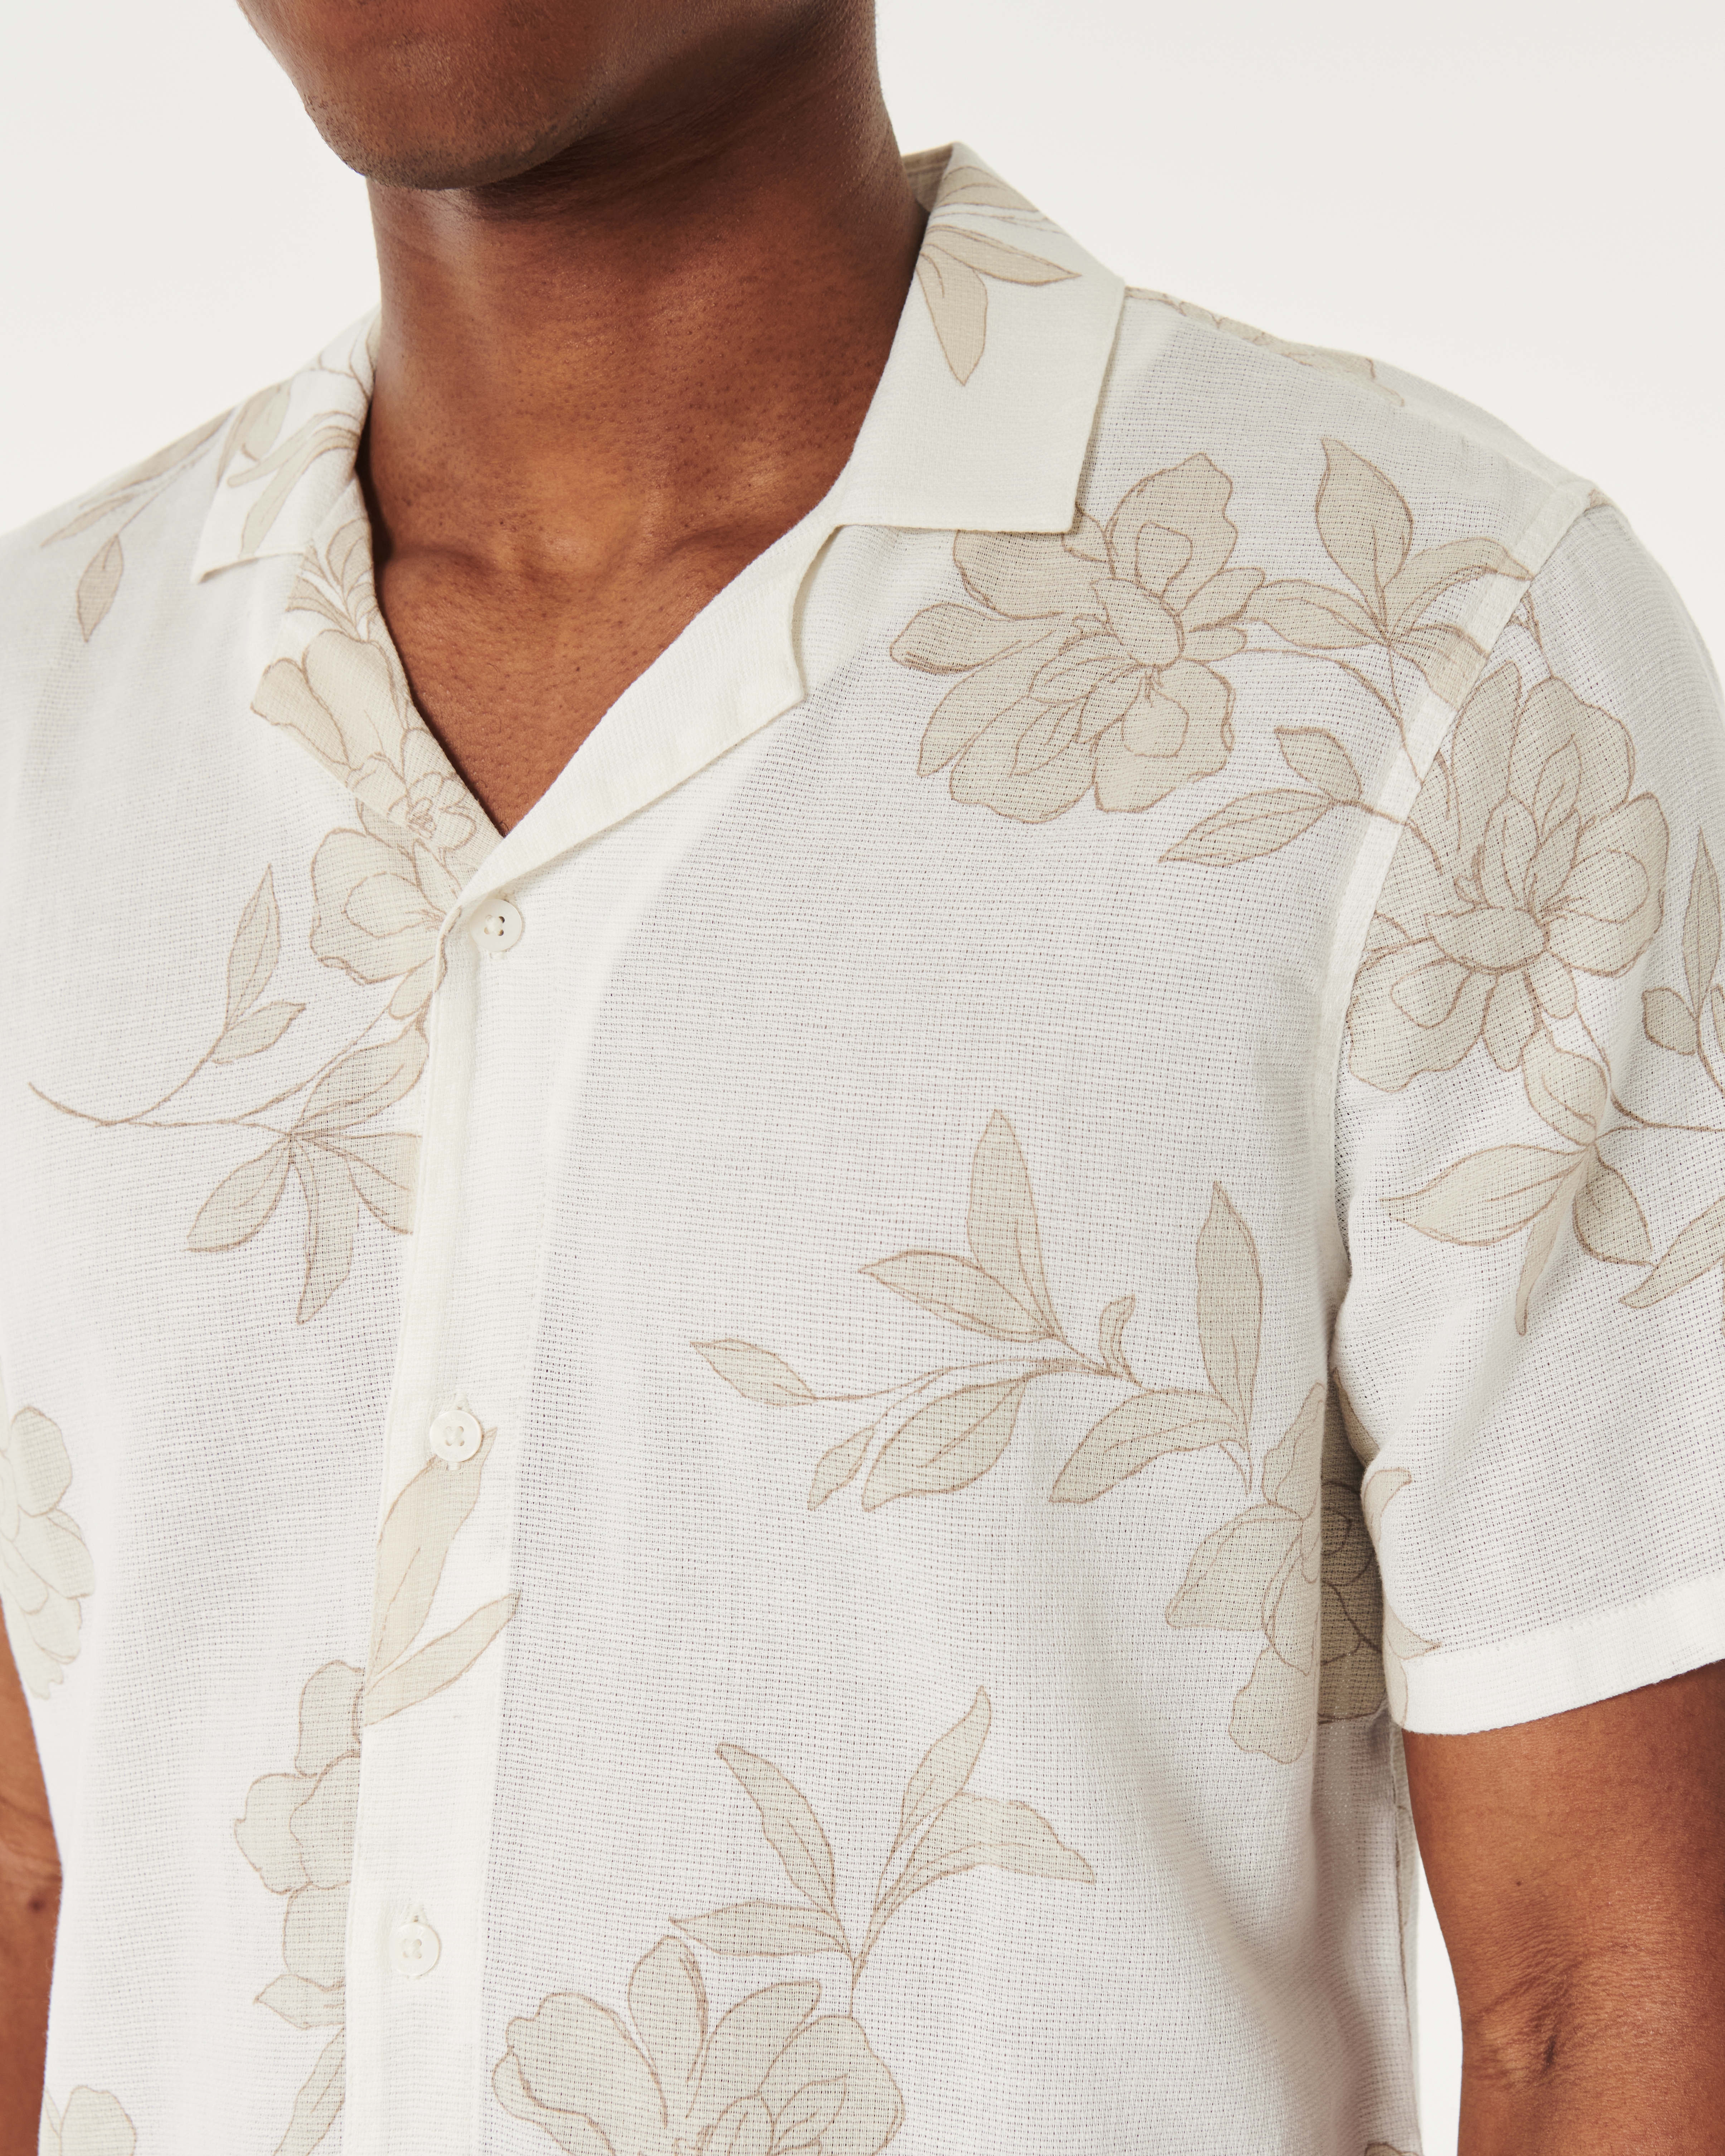 Short-Sleeve Pattern Button-Through Shirt